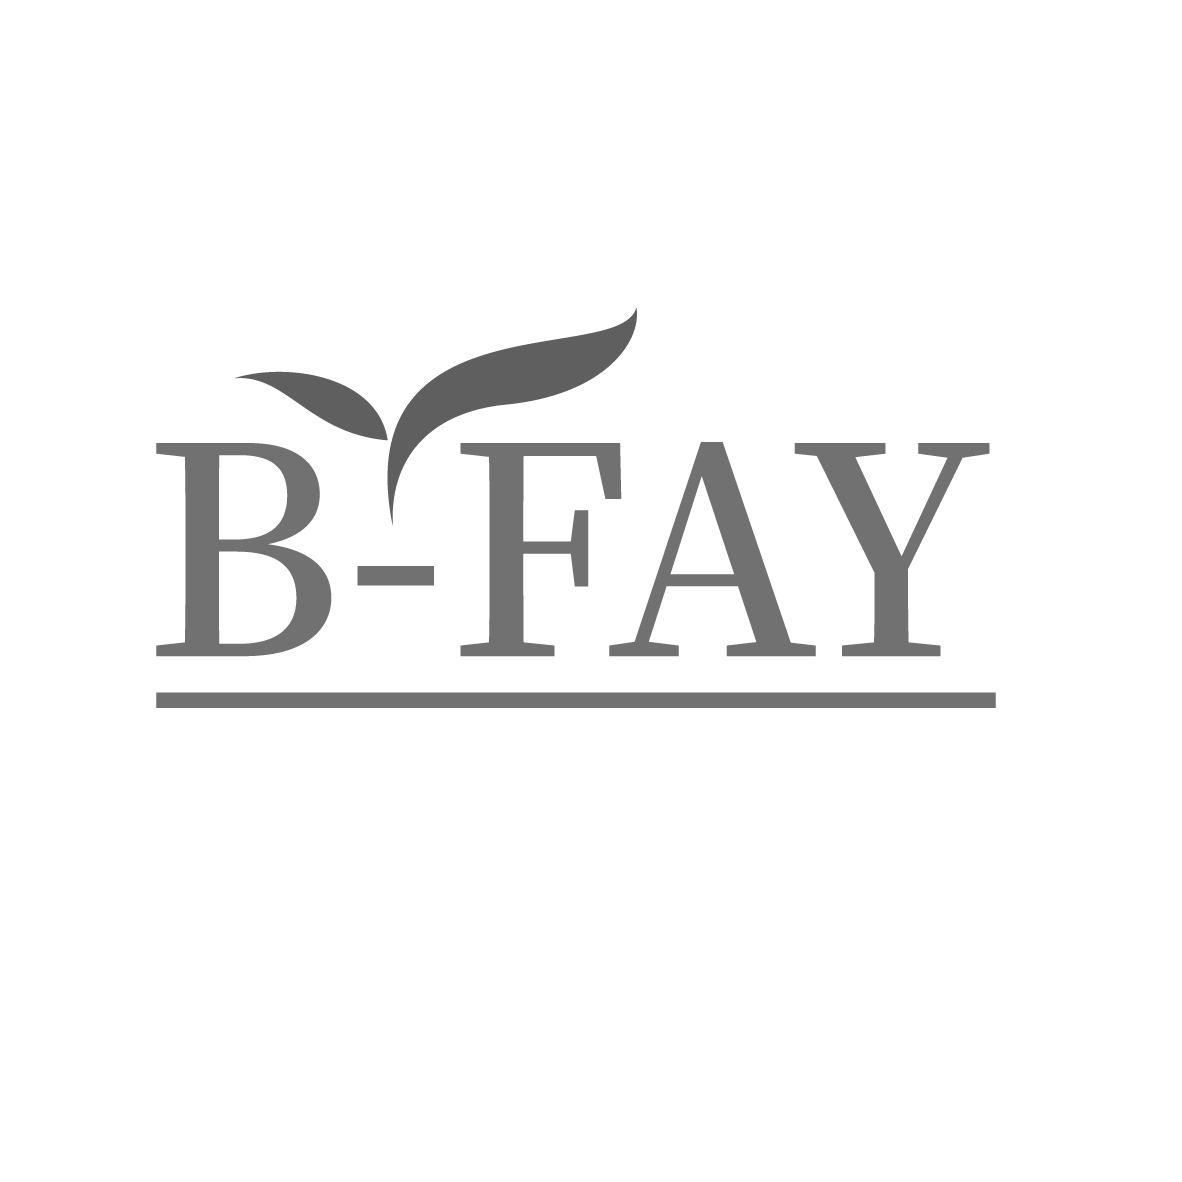 B-FAY